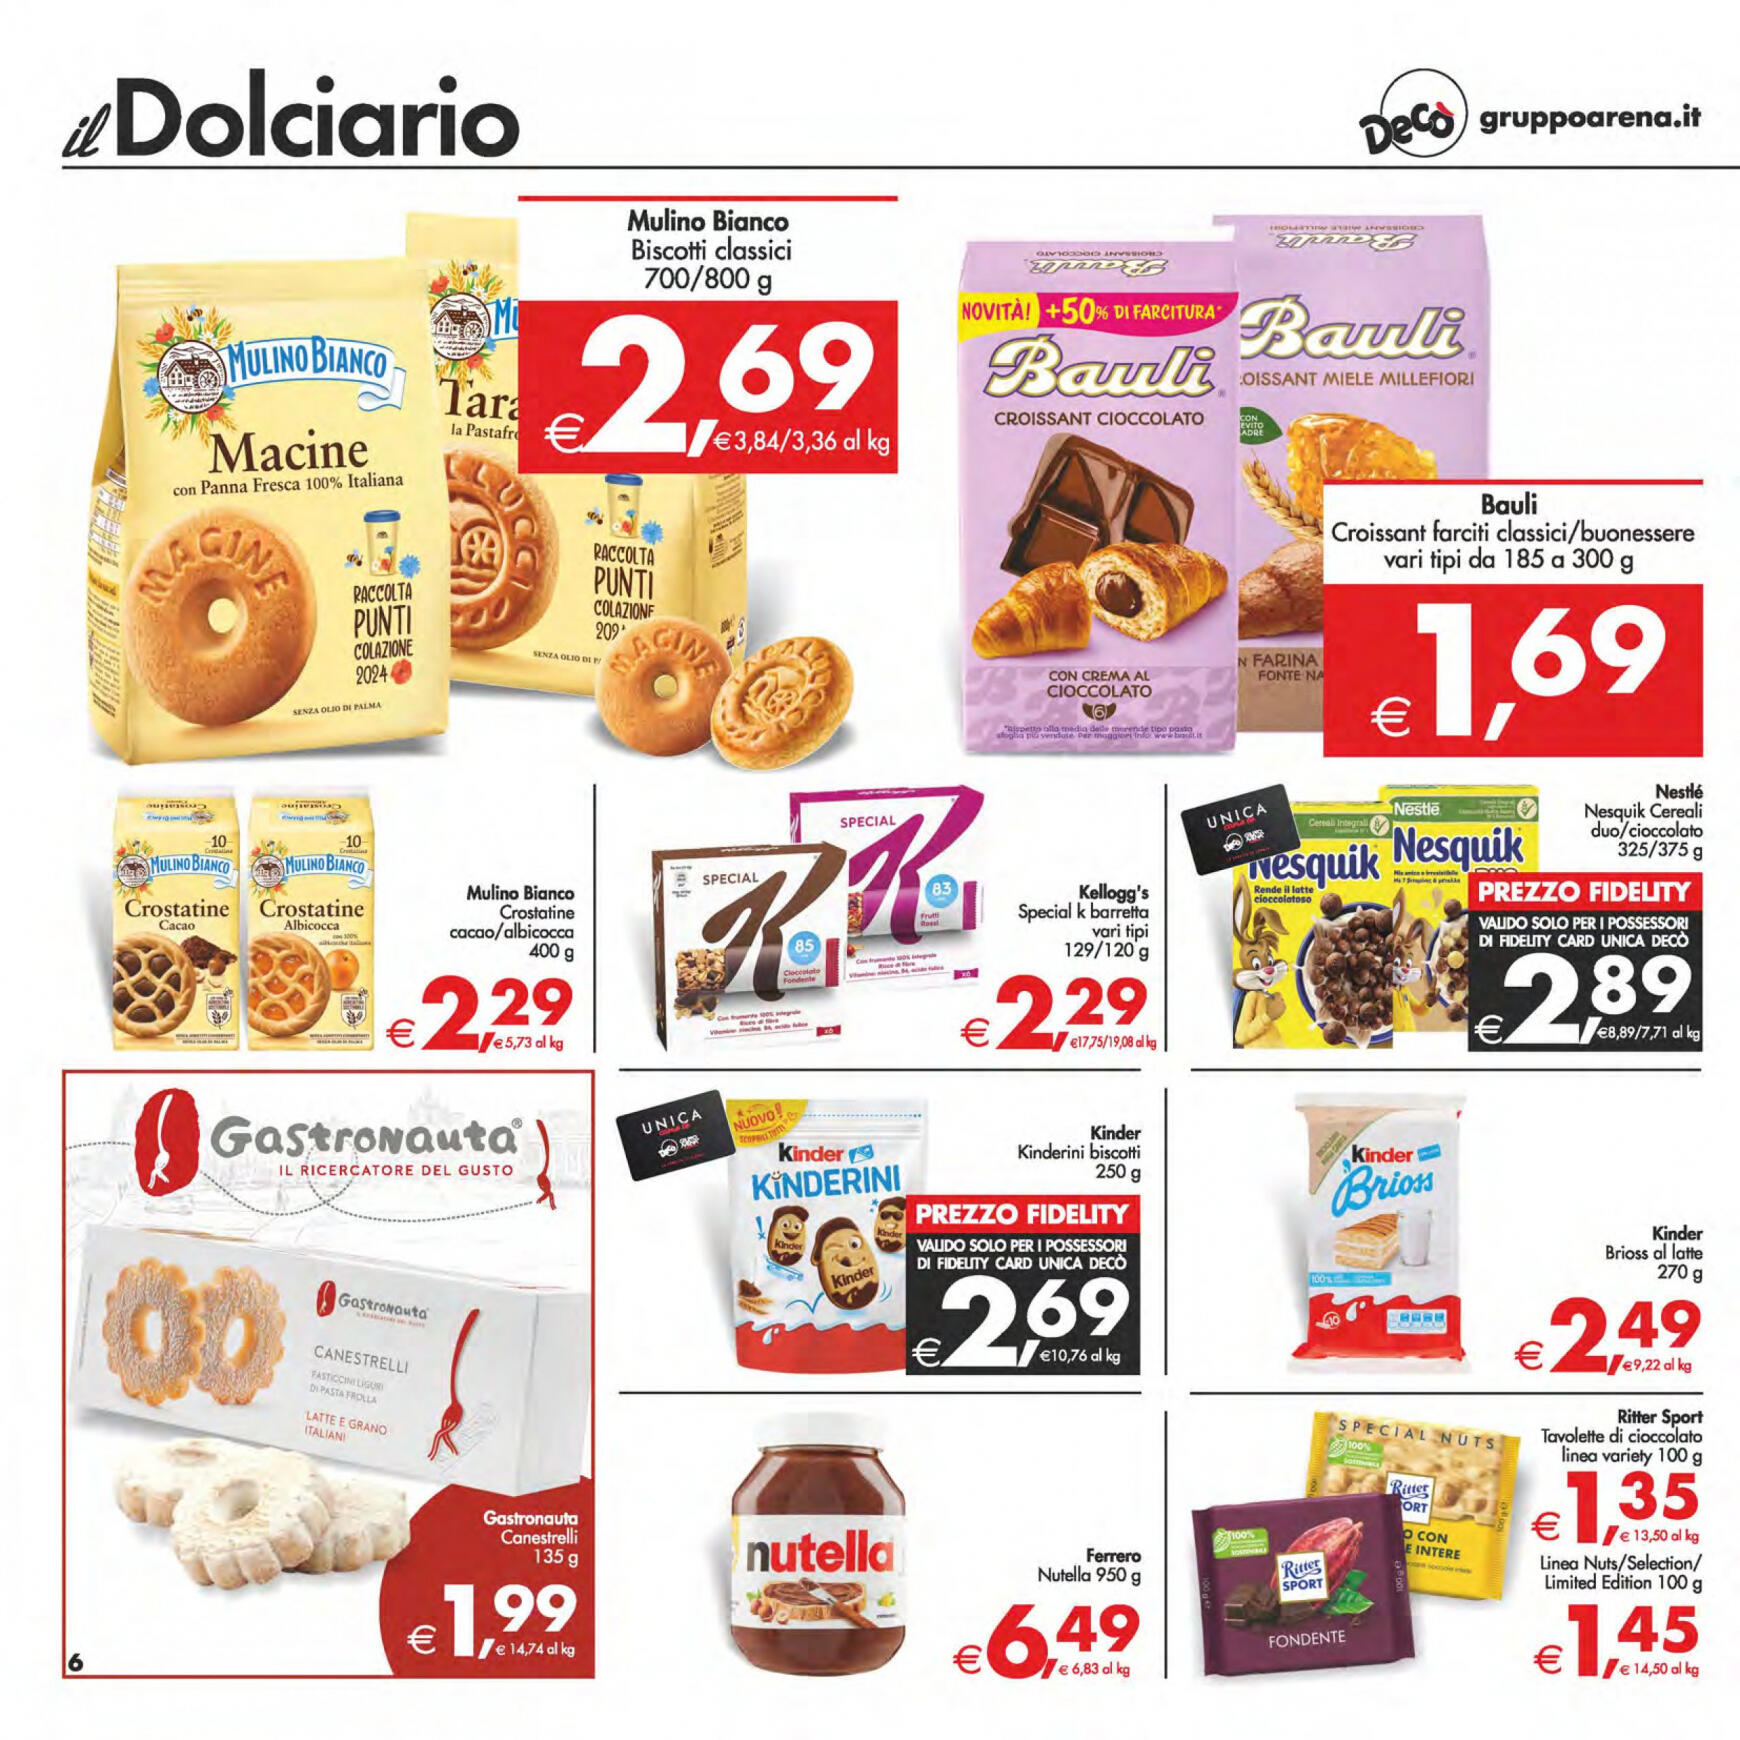 deco - Nuovo volantino Decò - Maxistore/Supermercati/Local 14.05. - 23.05. - page: 6